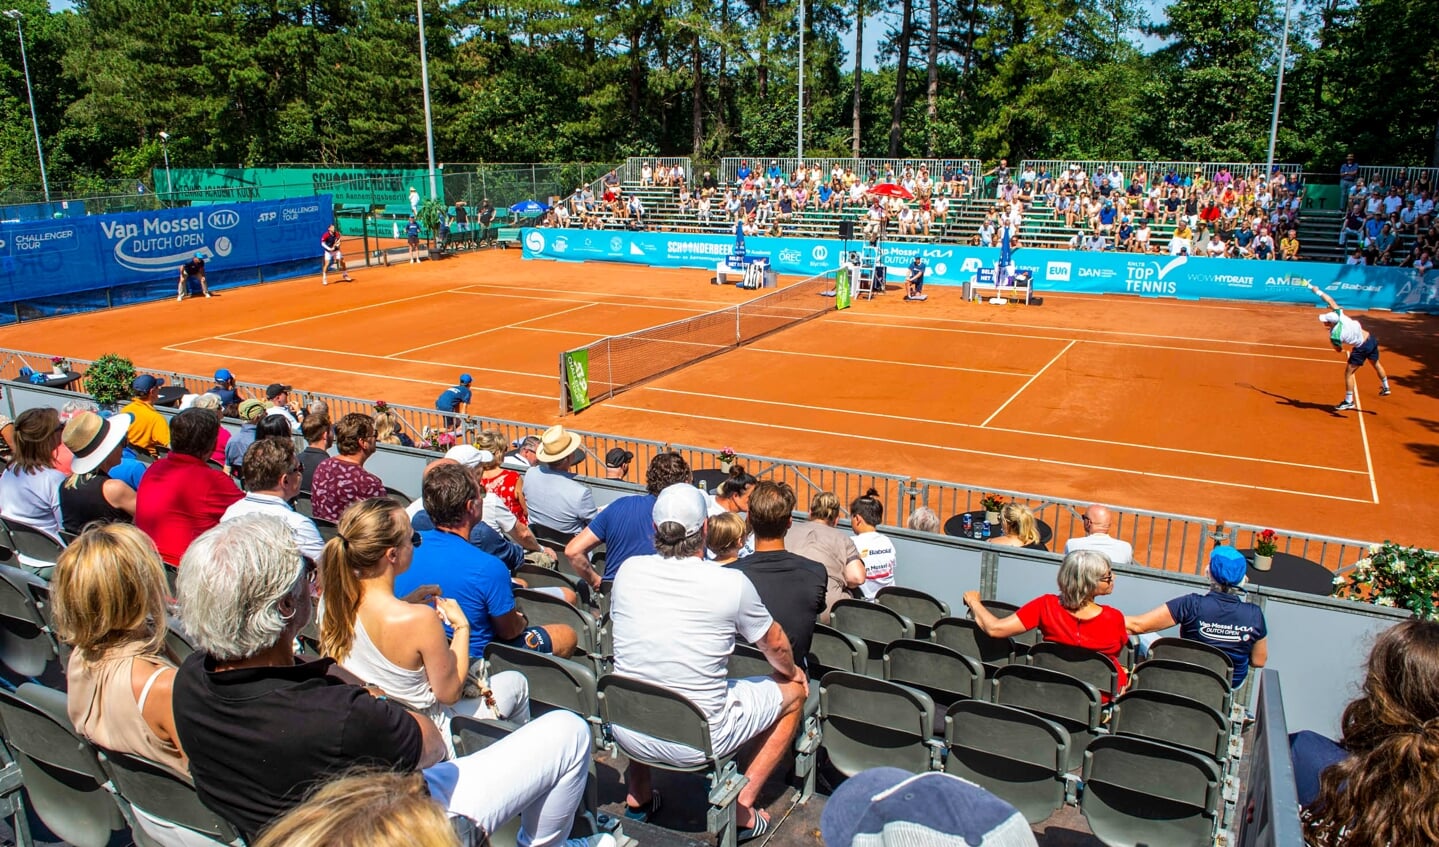 Tennis met publiek tijdens de Dutch Open in juli. Een hoopvol beeld van wat in de toekomst weer kan.